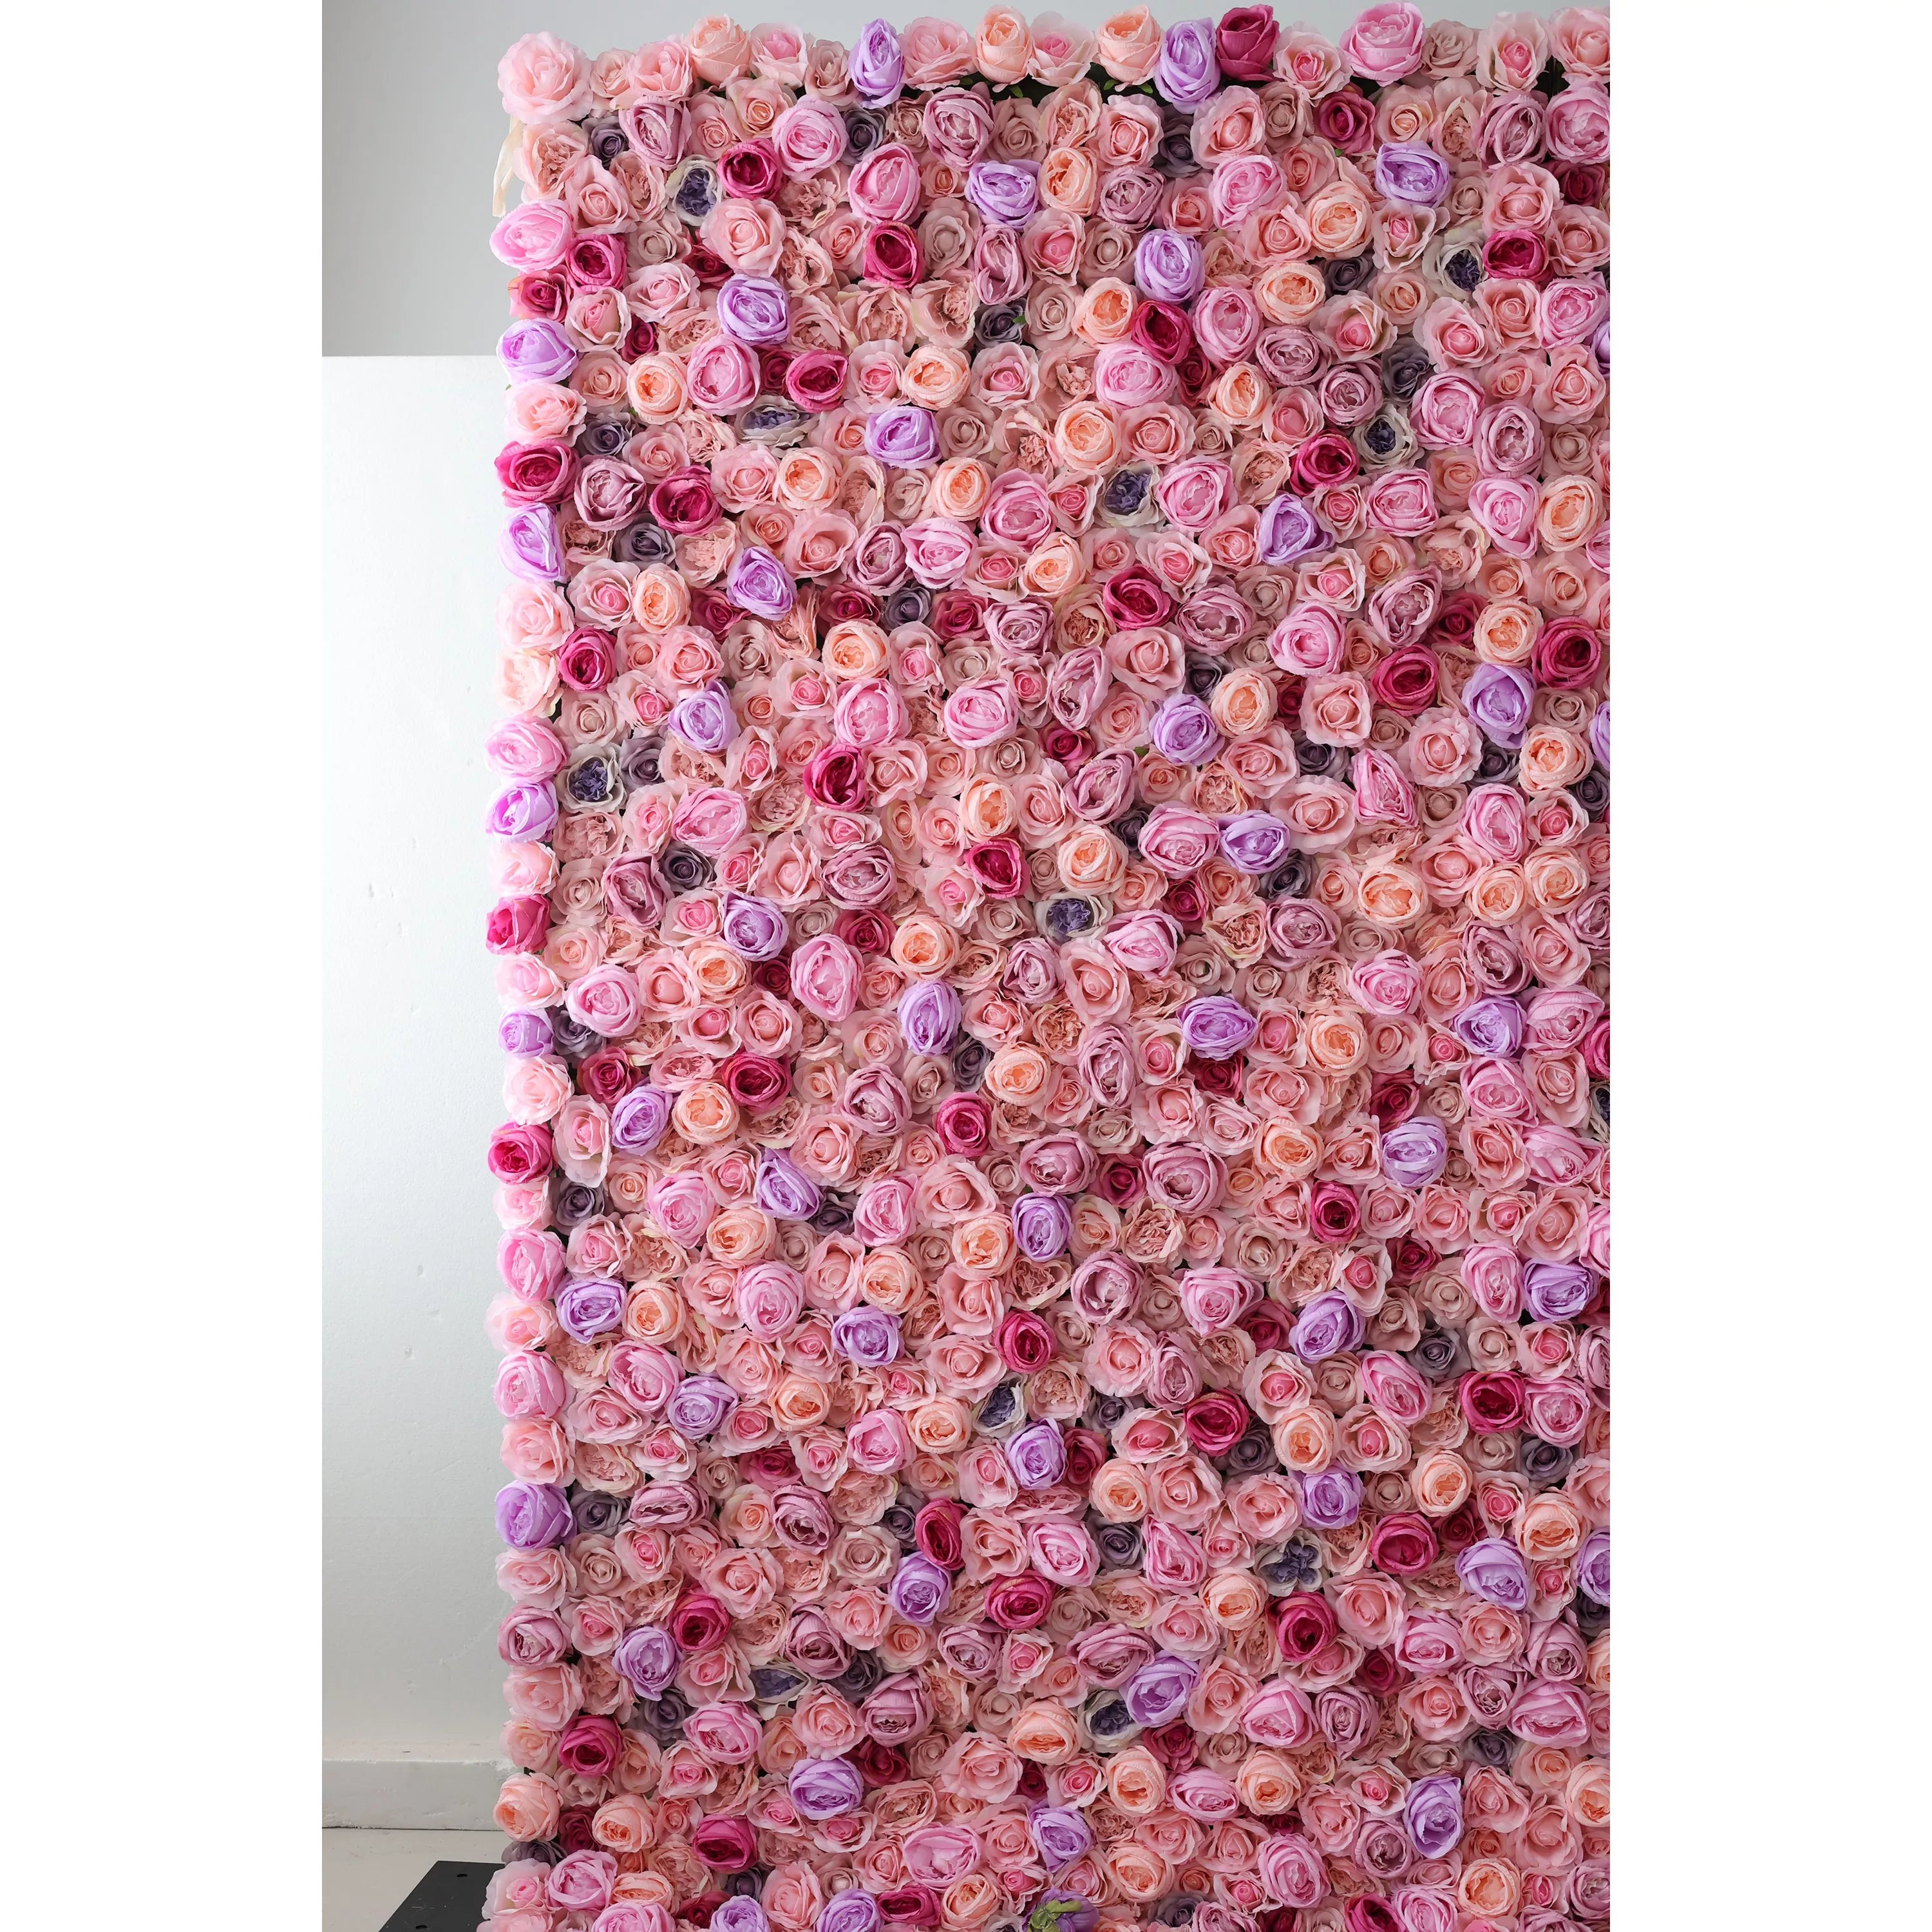 منتجع أزهار هادئ: احتضان الهدوء مع زهور الفالار-بانوراما وردية للمناسبات والسبا